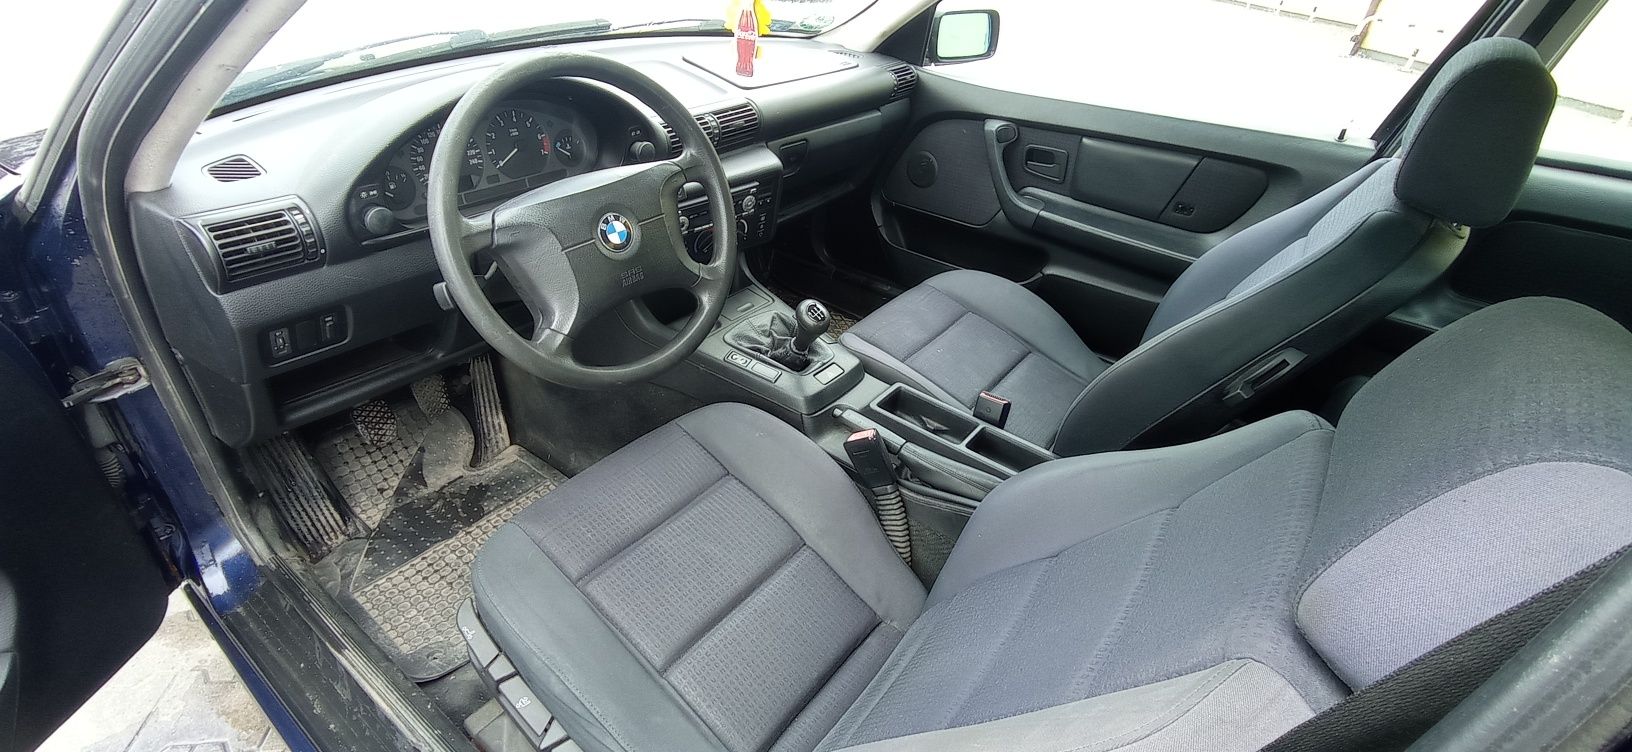 BMW E36 316i kompakt ! ele szyby ! niski przebieg ! polift ! szyberdac